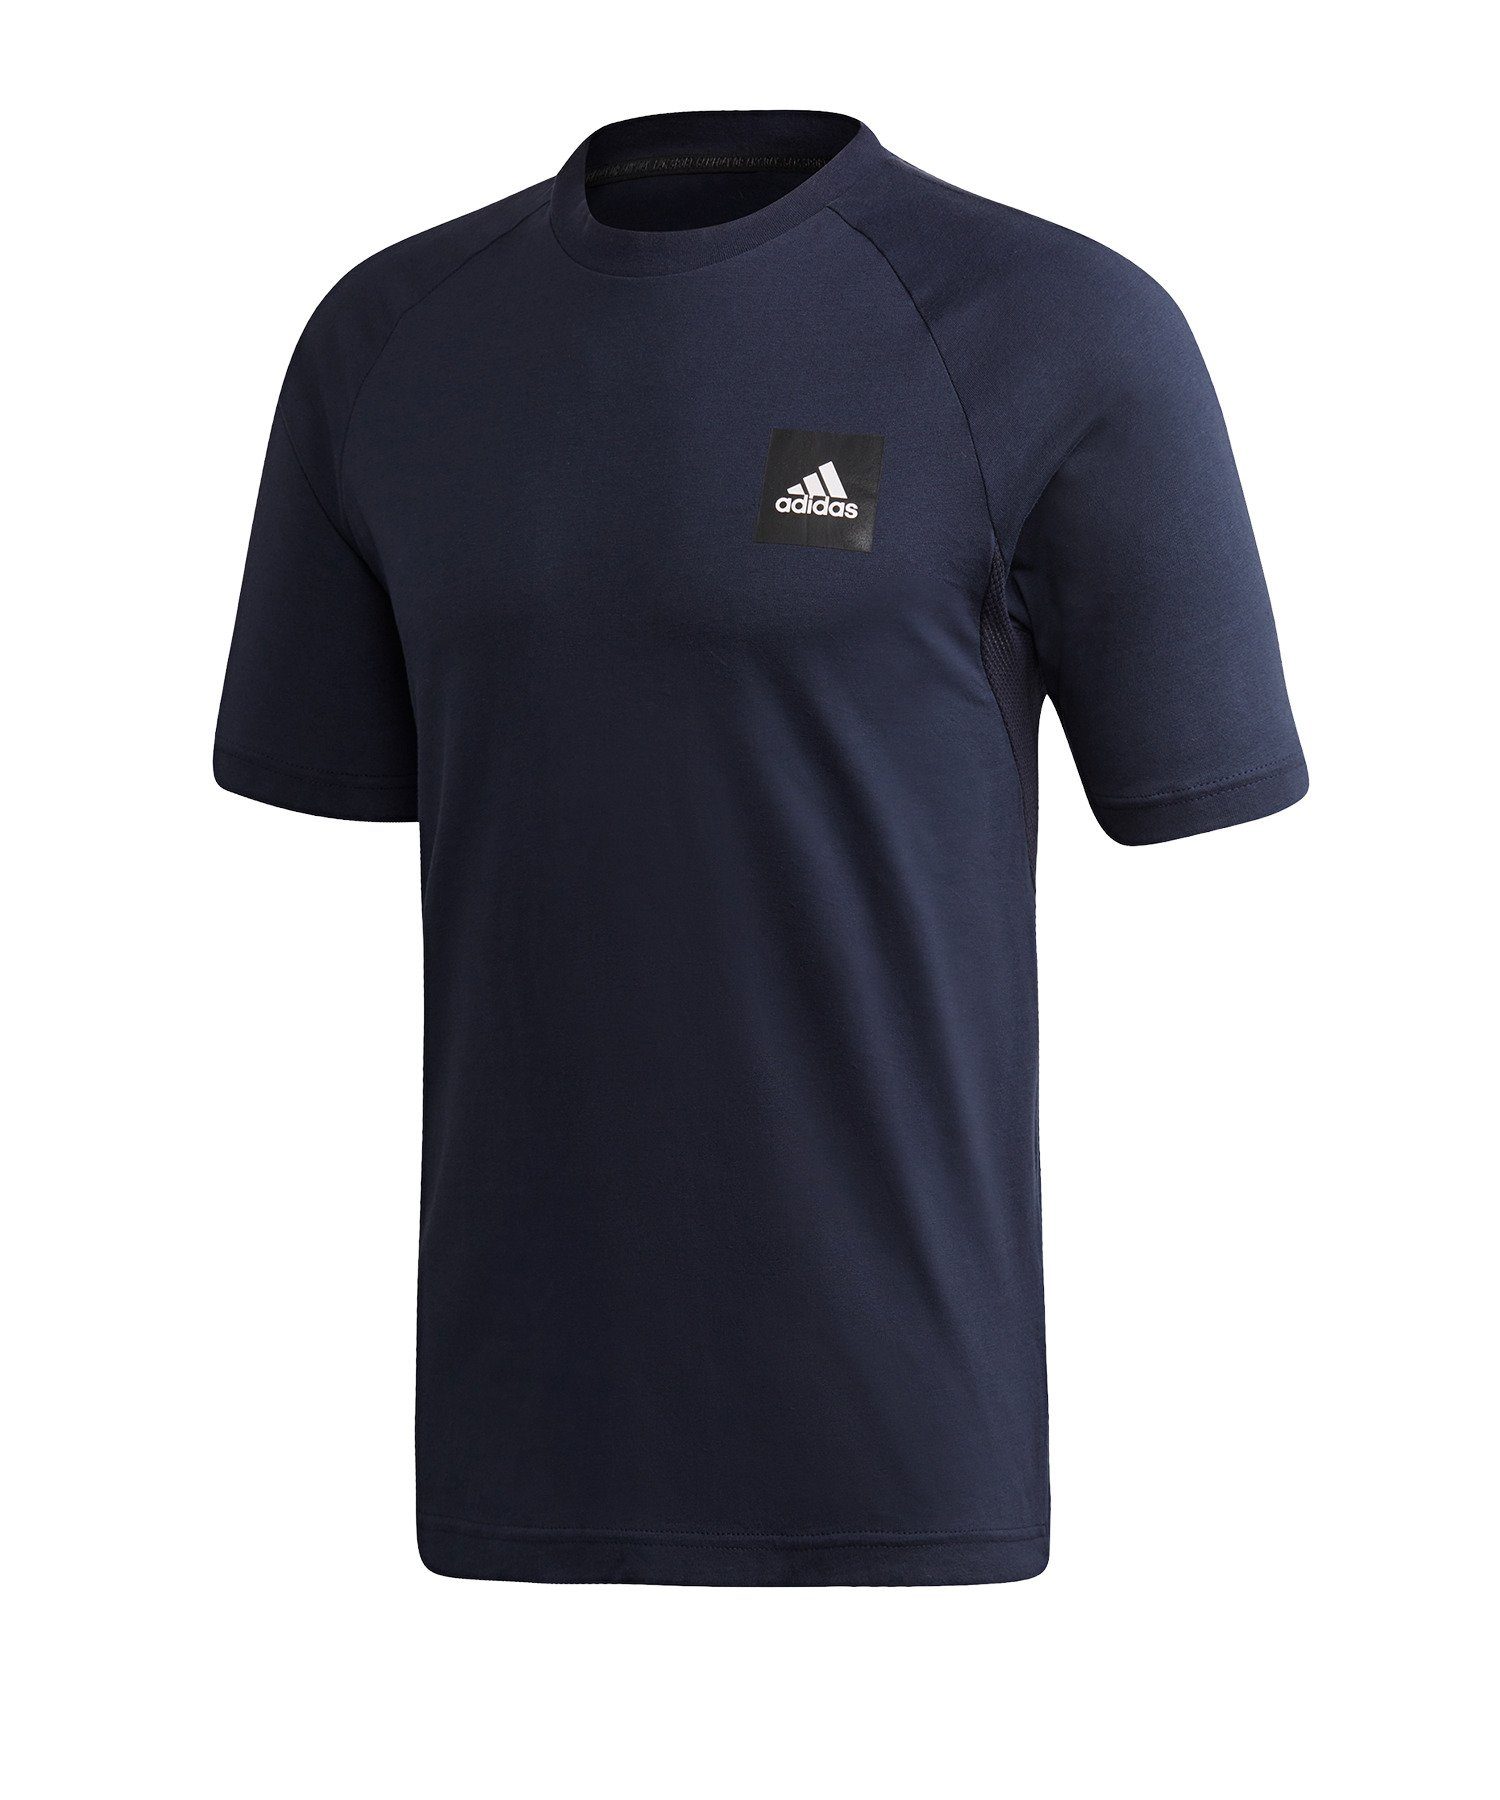 adidas Performance T-Shirt MH T-Shirt default blauschwarz